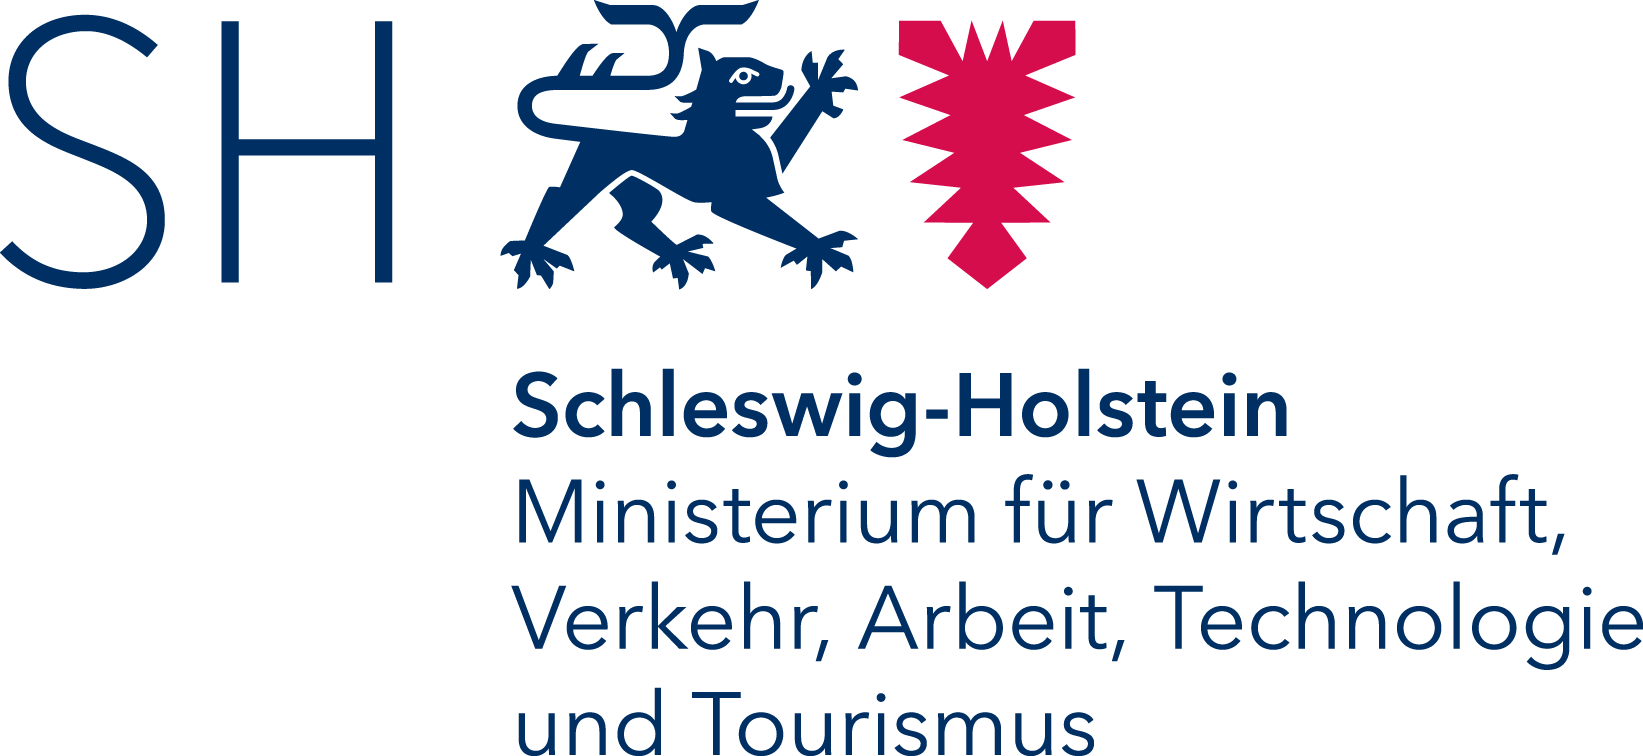 Logo-Ministerium für Wirtschaft, Verkehr, Arbeit, Technologie und Tourismus Schleswig-Holstein